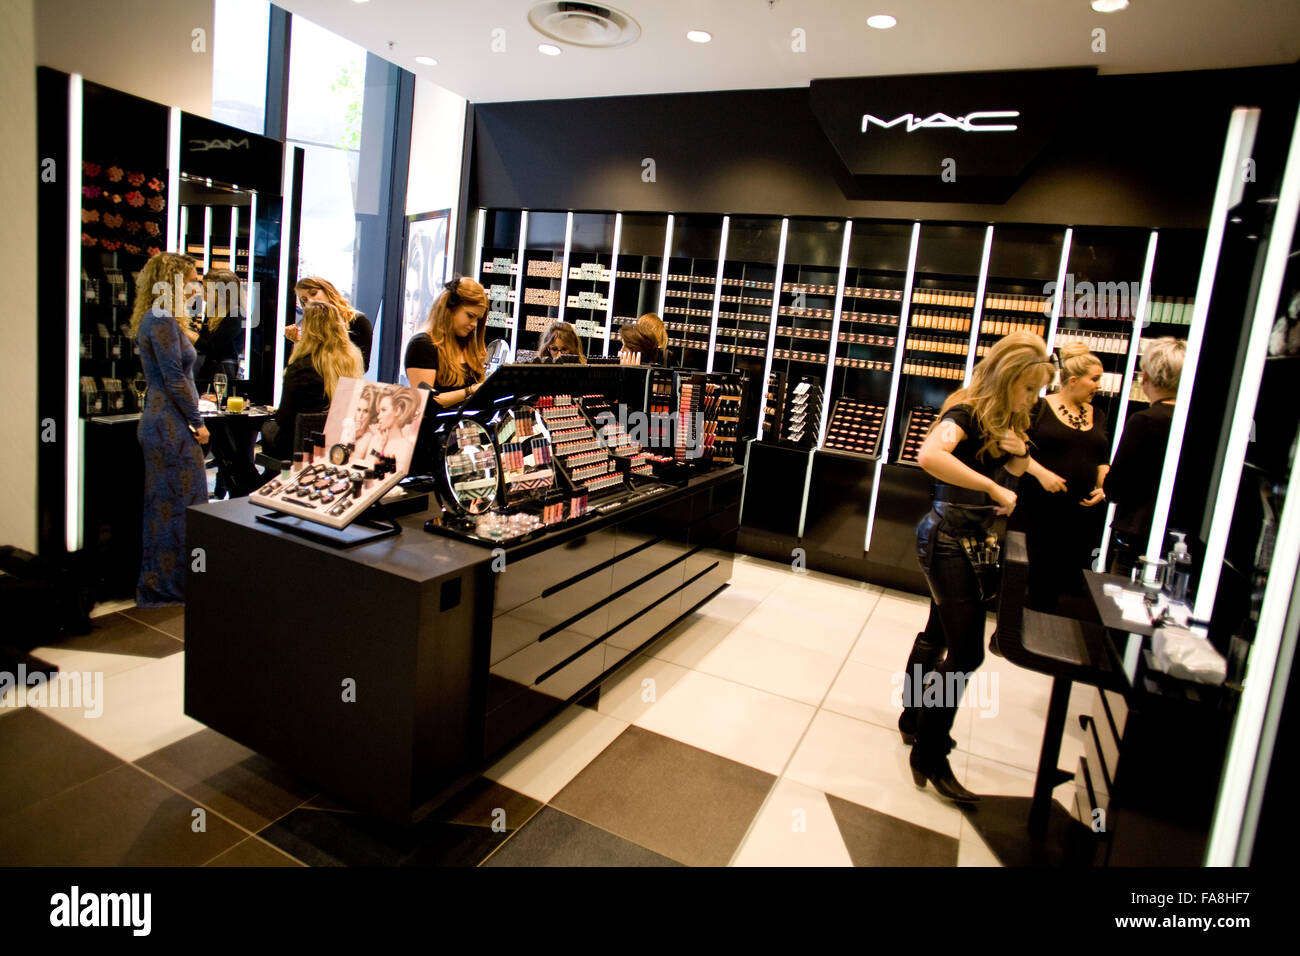 Mac makeup shop hi-res photography images - Alamy